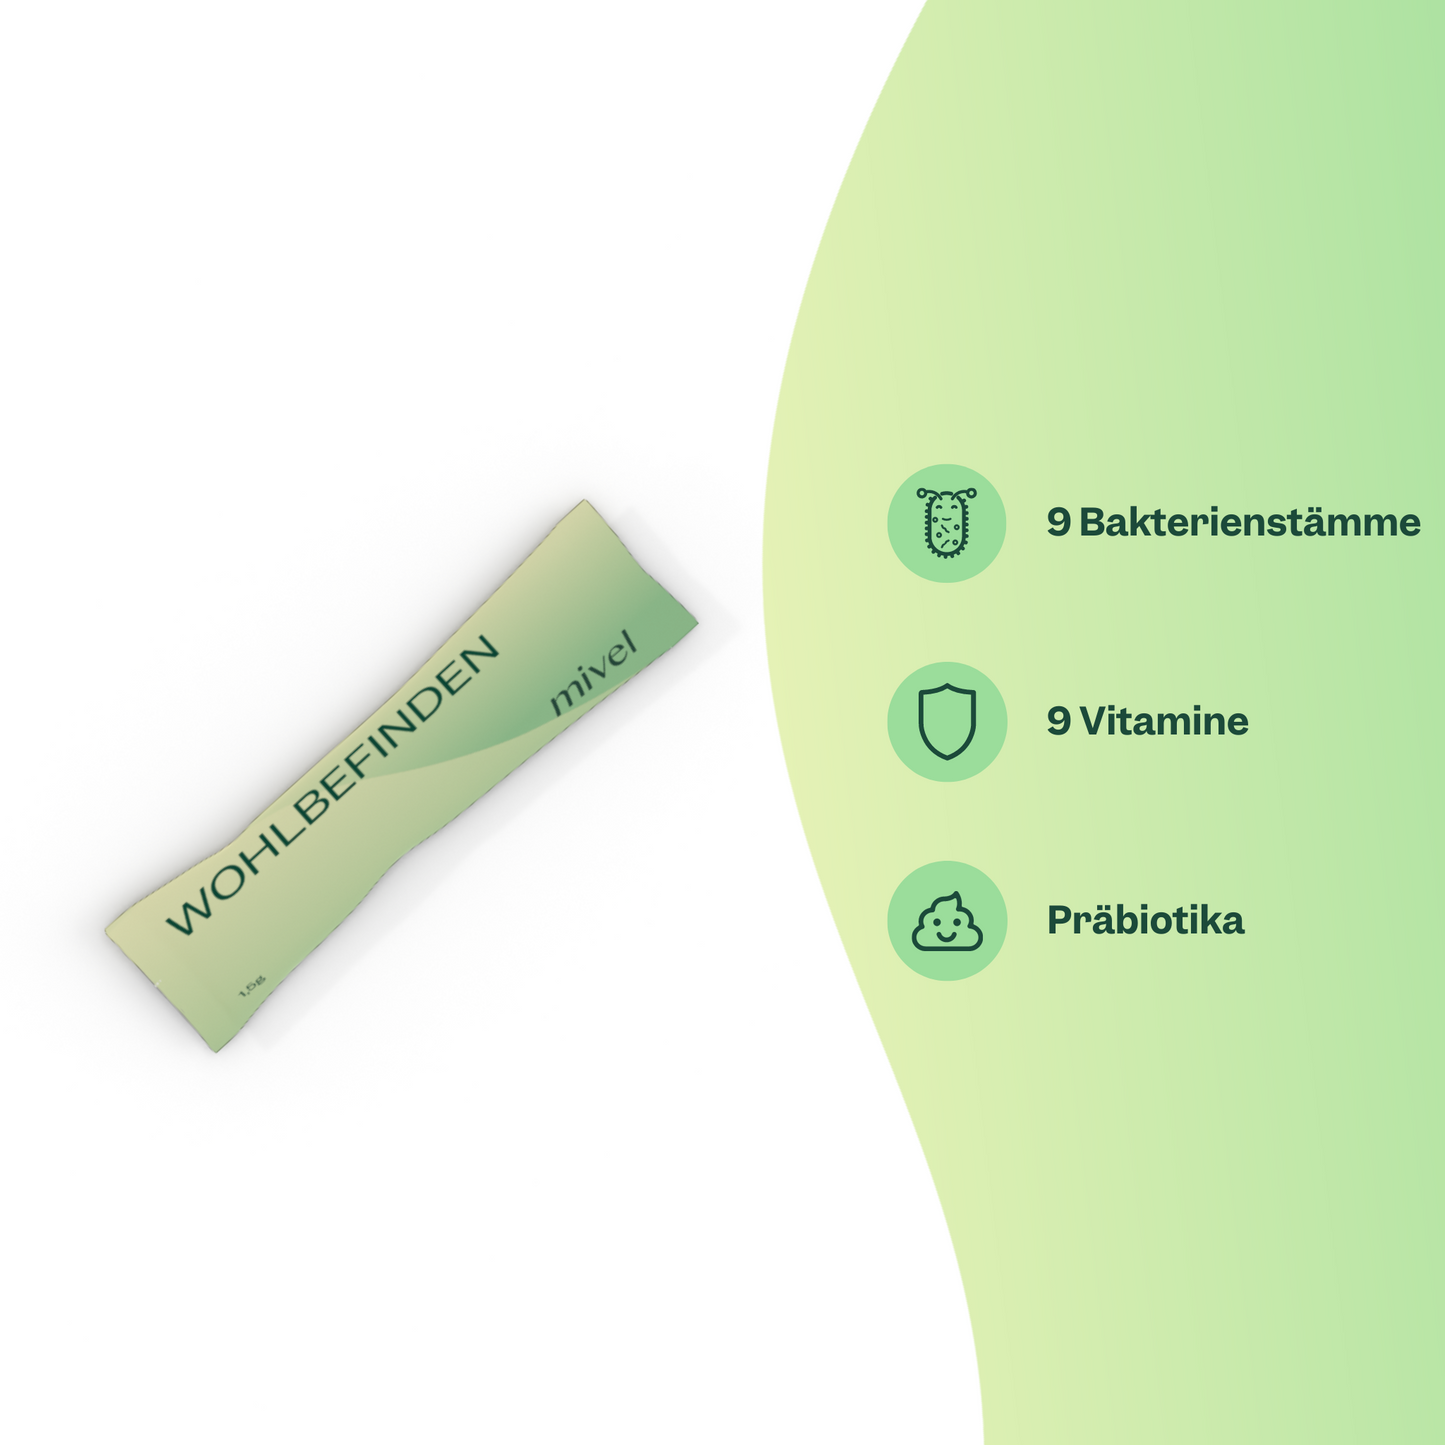 Direkt-Stick mit 9 Bakterien, 9 Vitaminen und Präbiotika